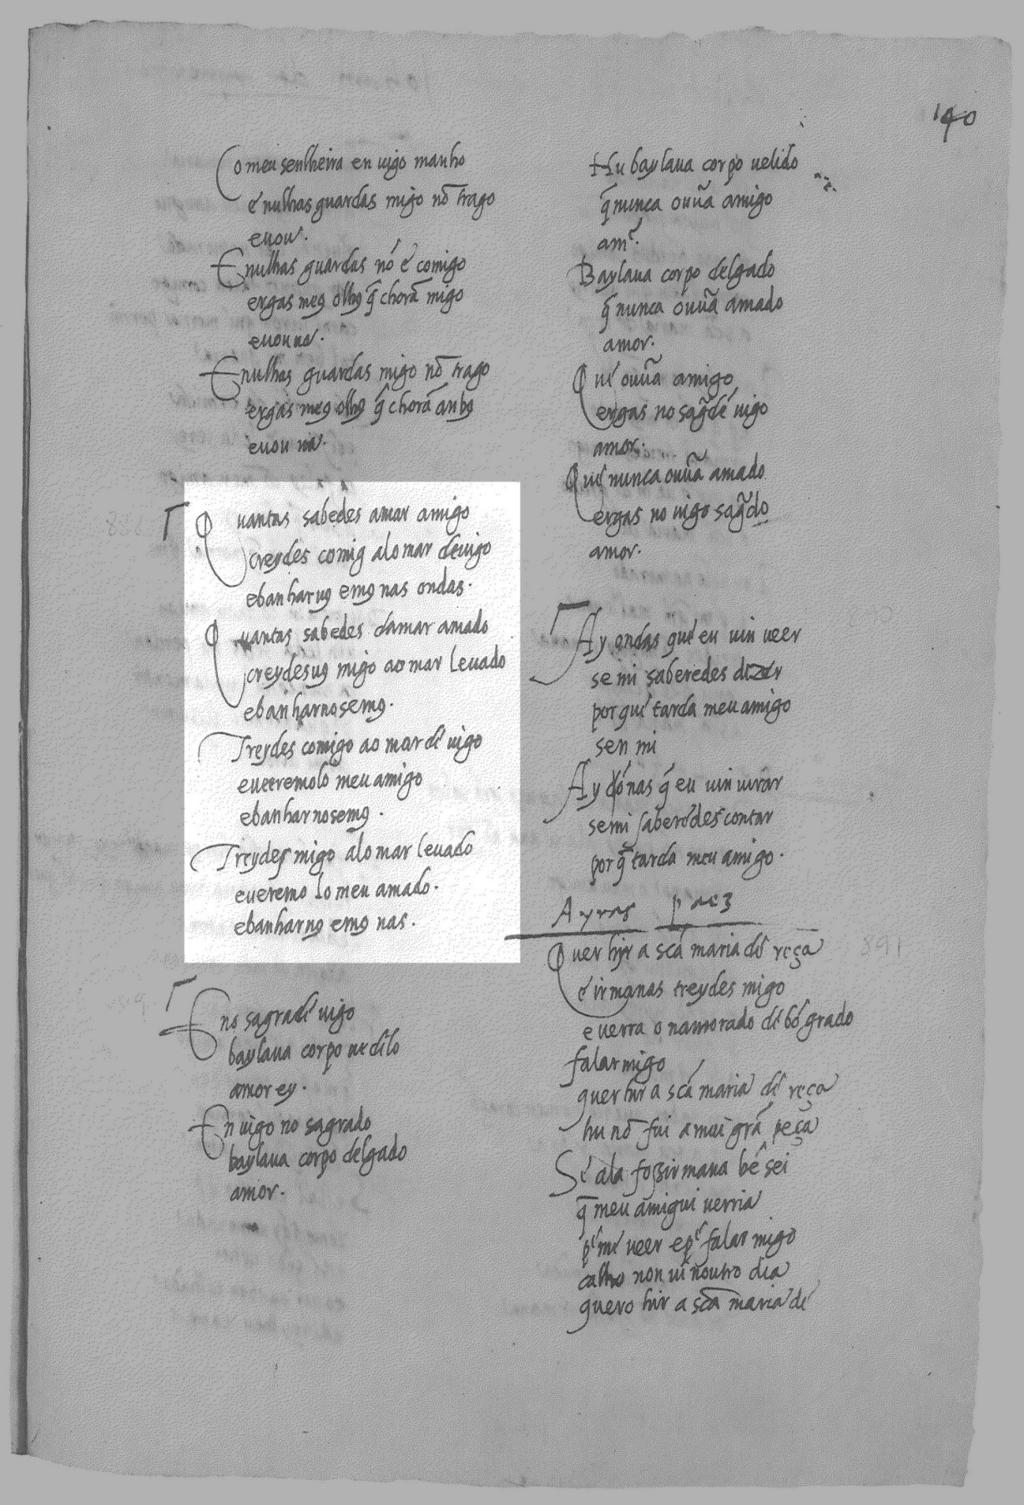 ANEXO 4 - Manuscritos da cantiga VI - Eno